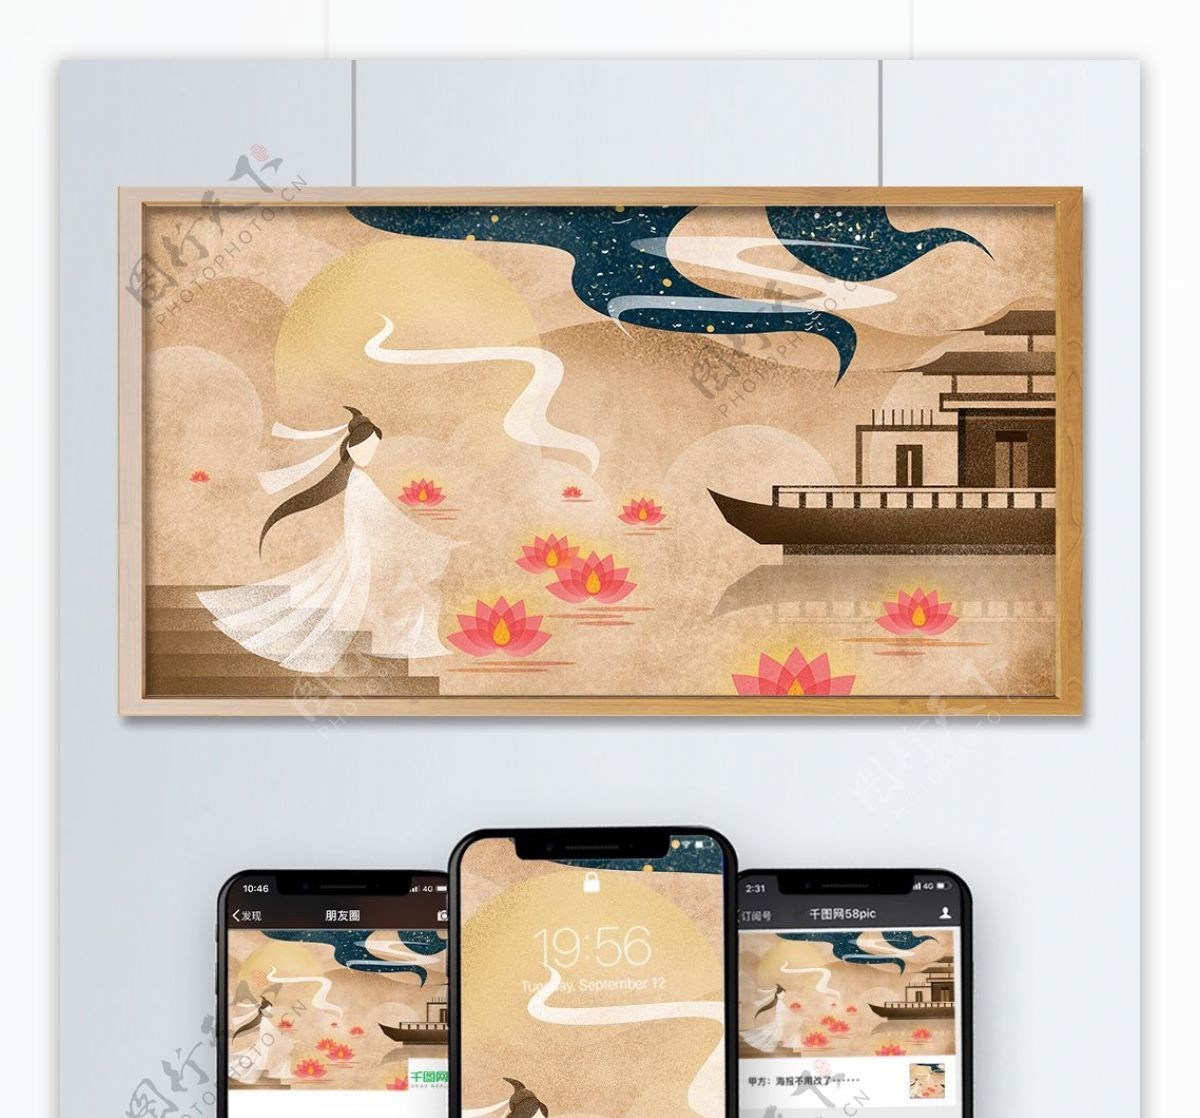 中元节放河灯许愿纪念复古中国风手绘插画